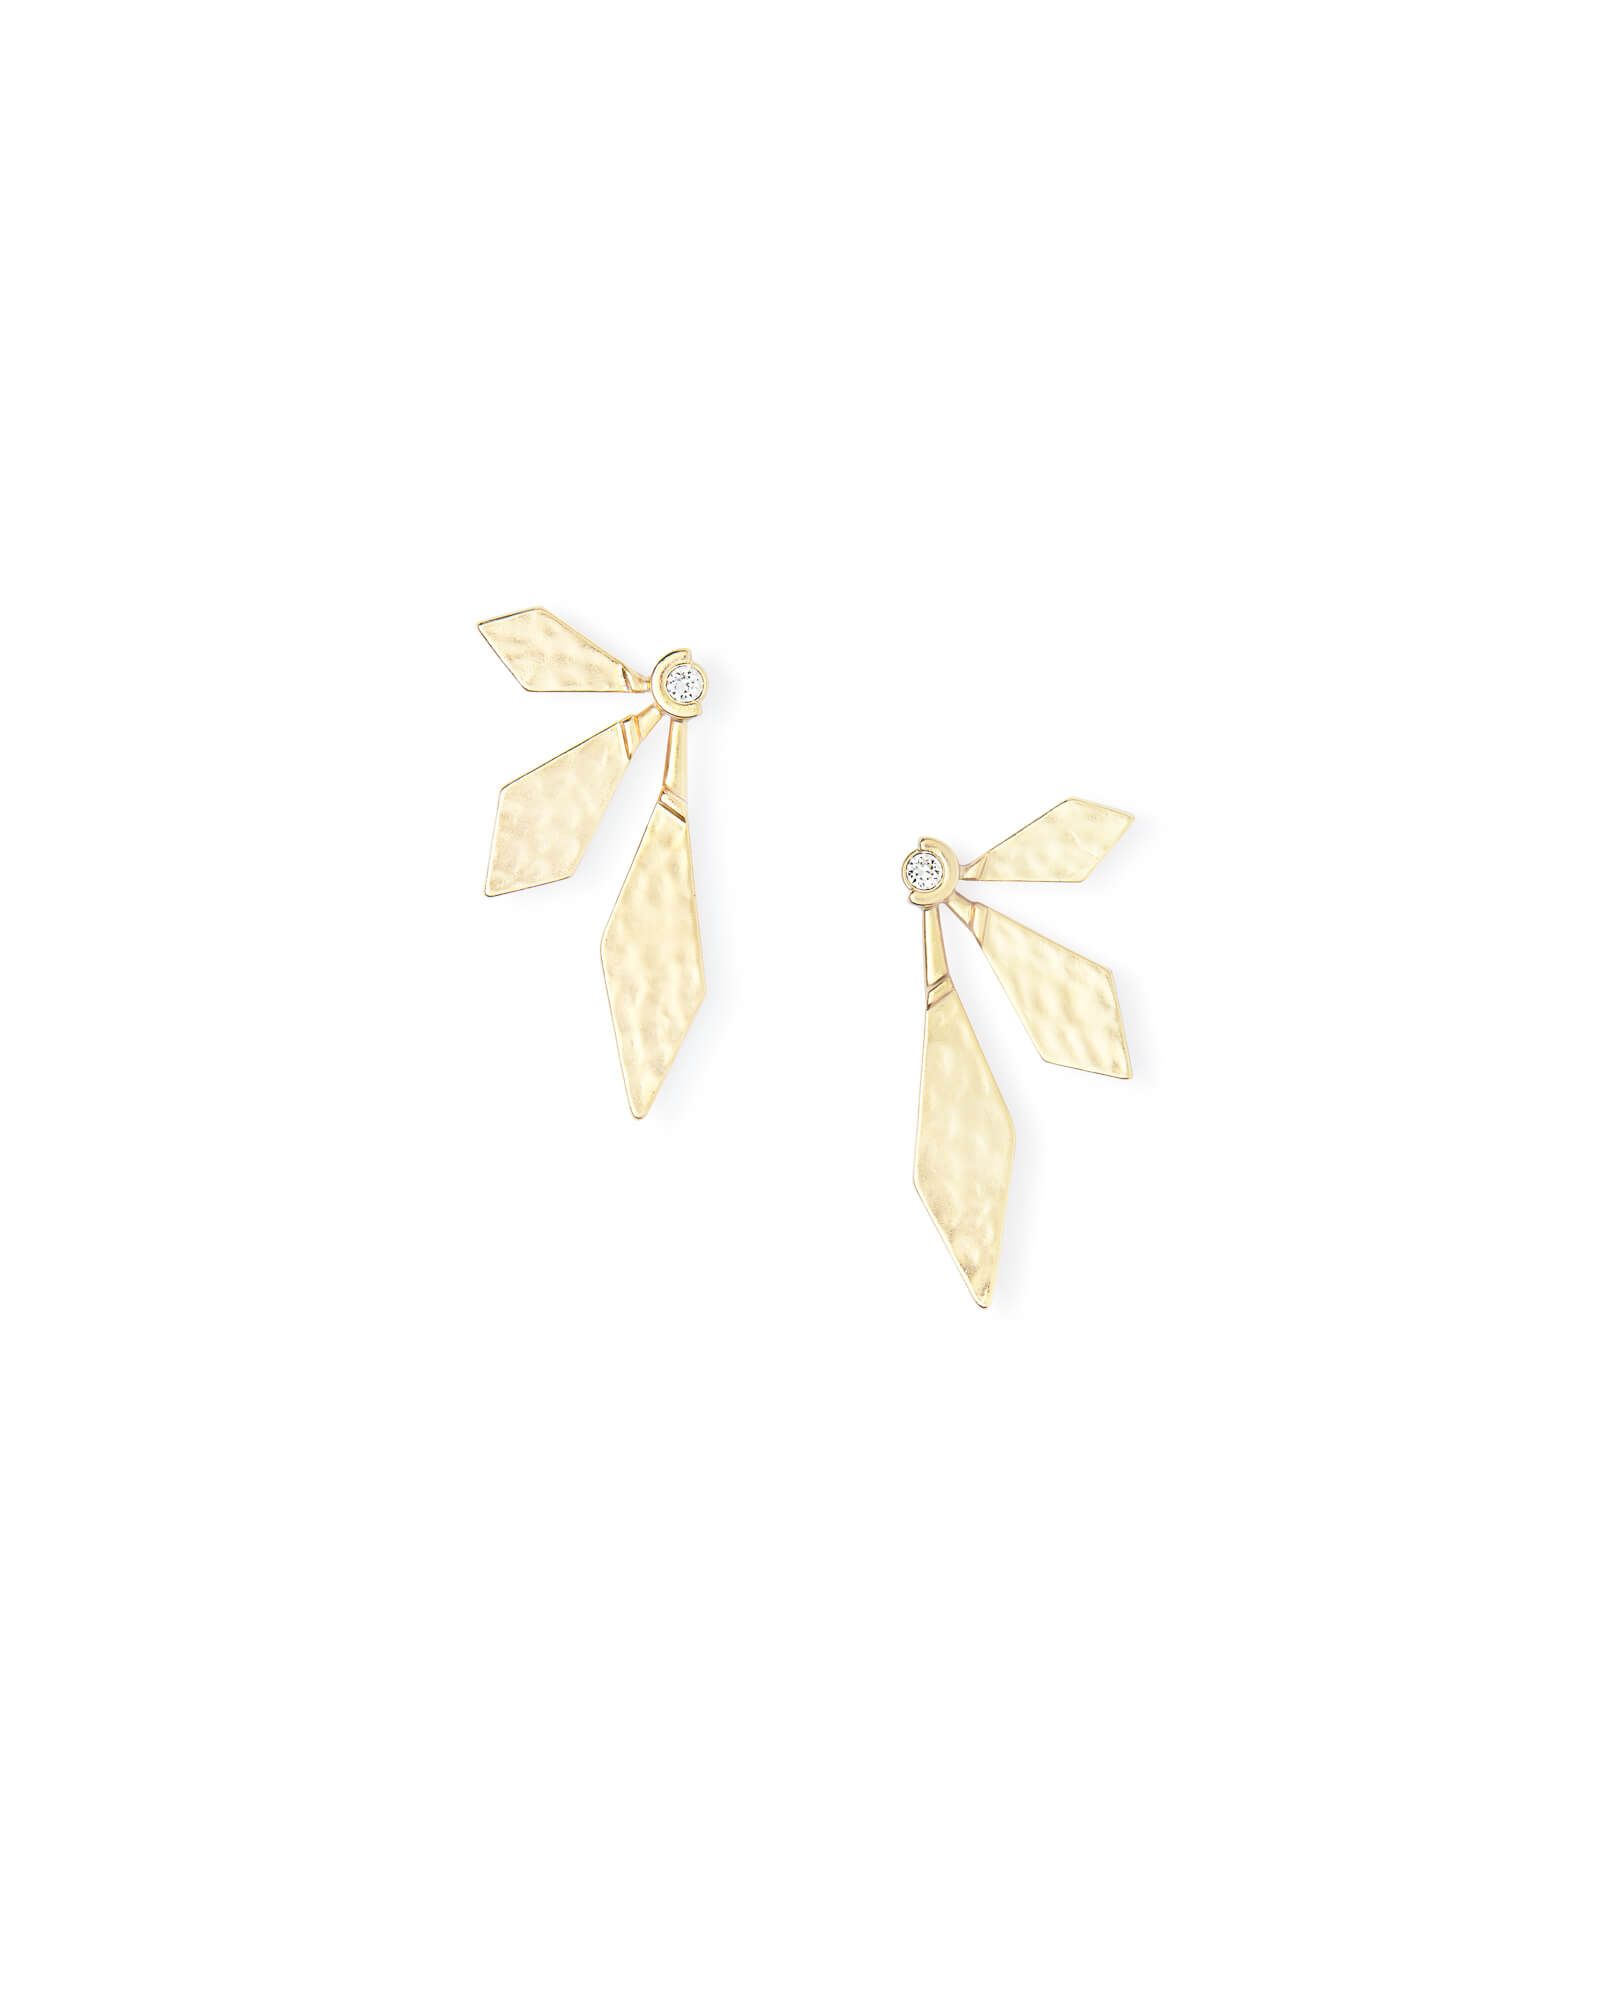 Jayden Stud Earrings in Bright Silver | Kendra Scott | Kendra Scott